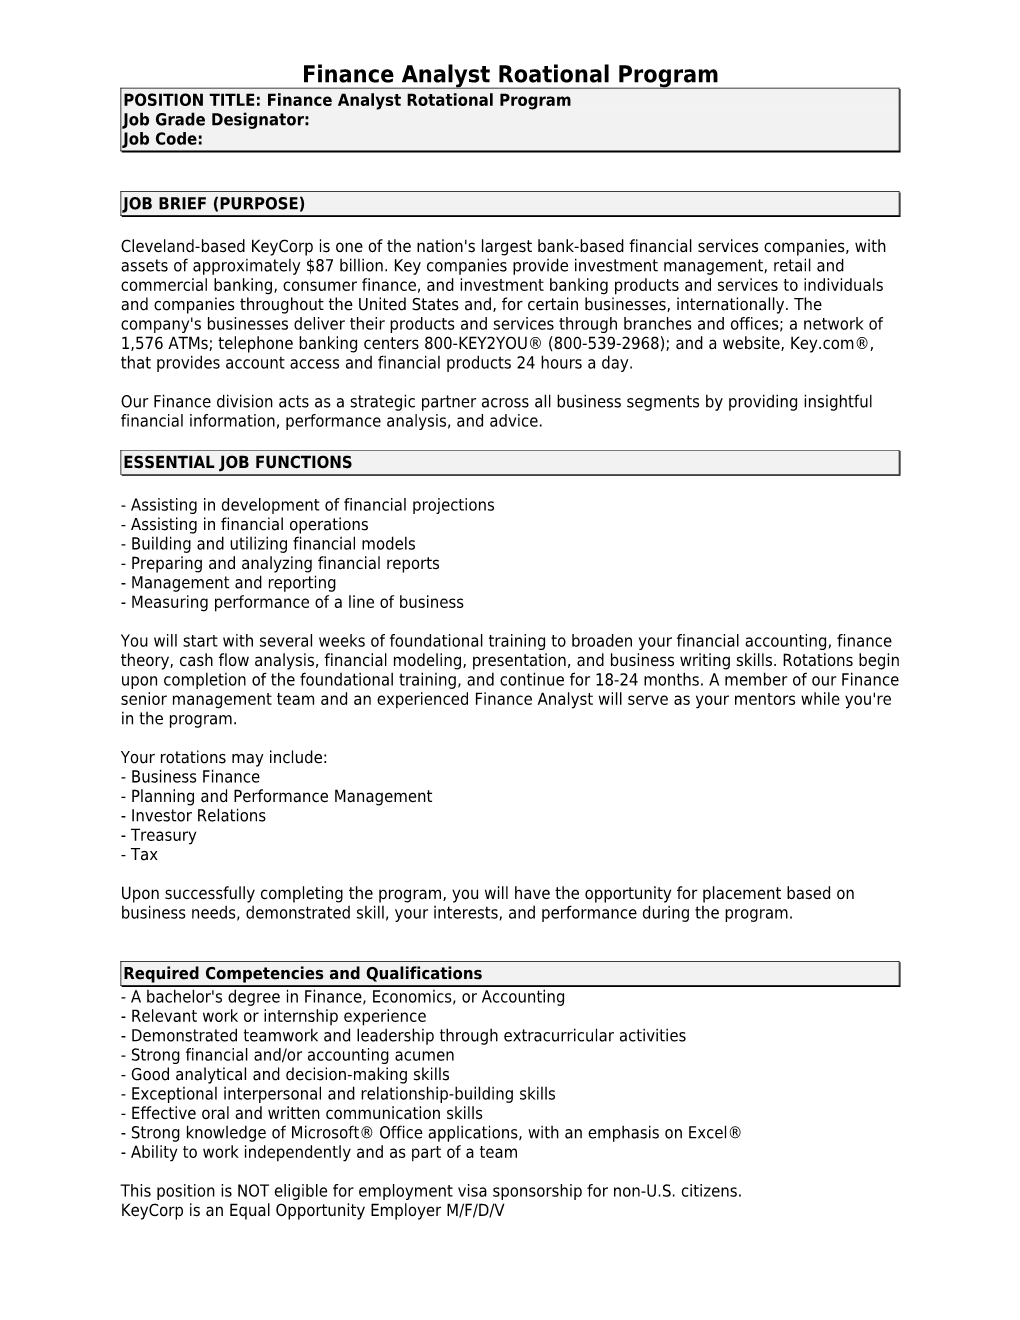 Job Description - Guidelines